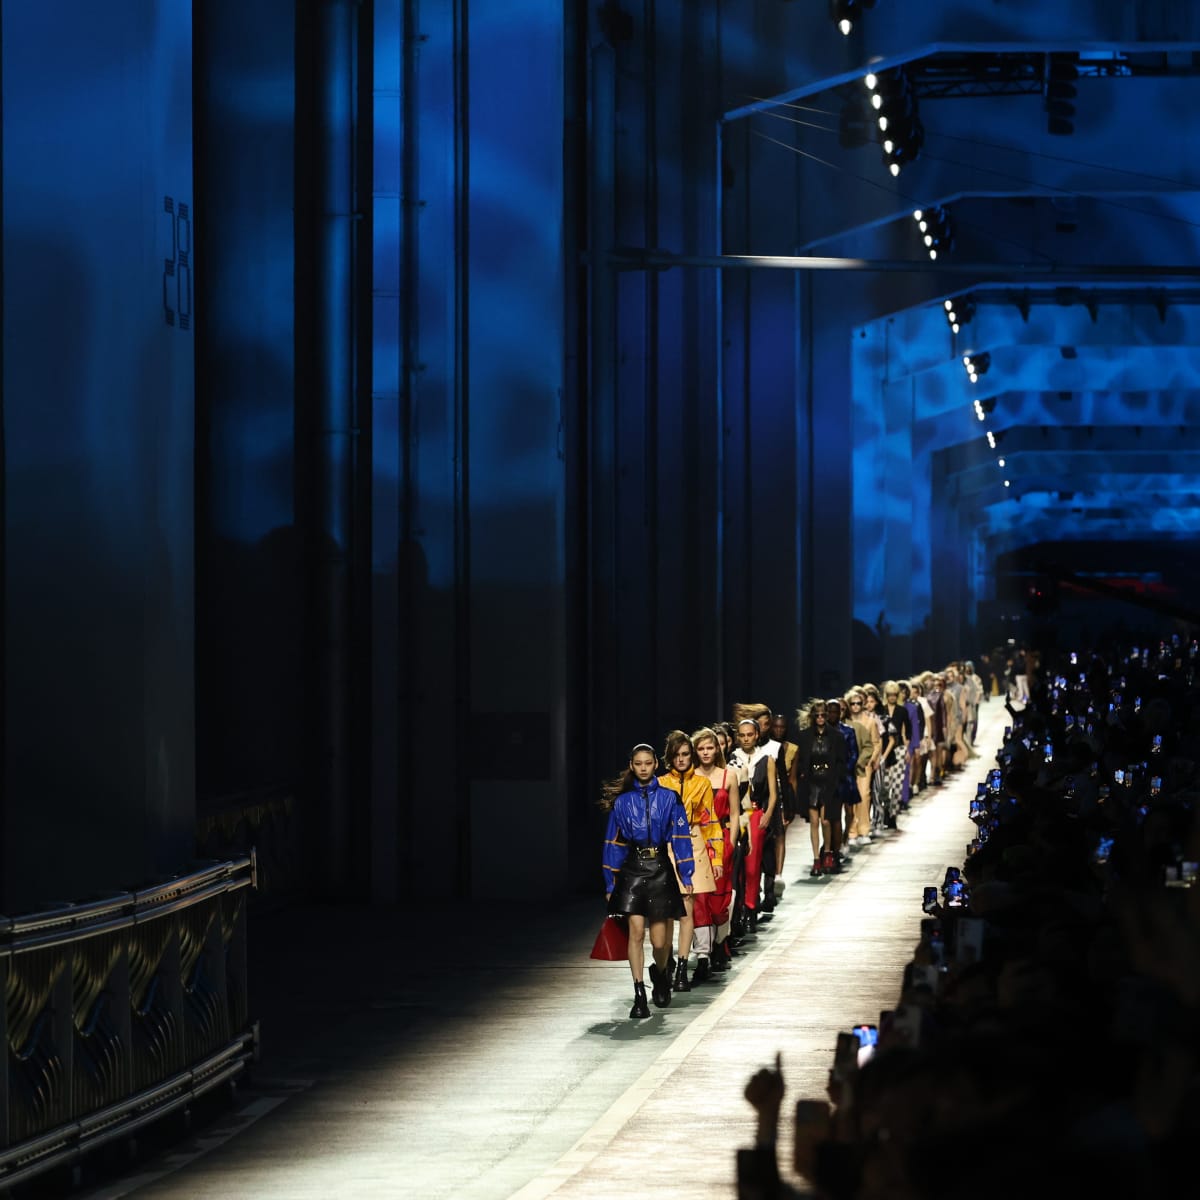 Louis Vuitton Pre-Fall 2023 Collection